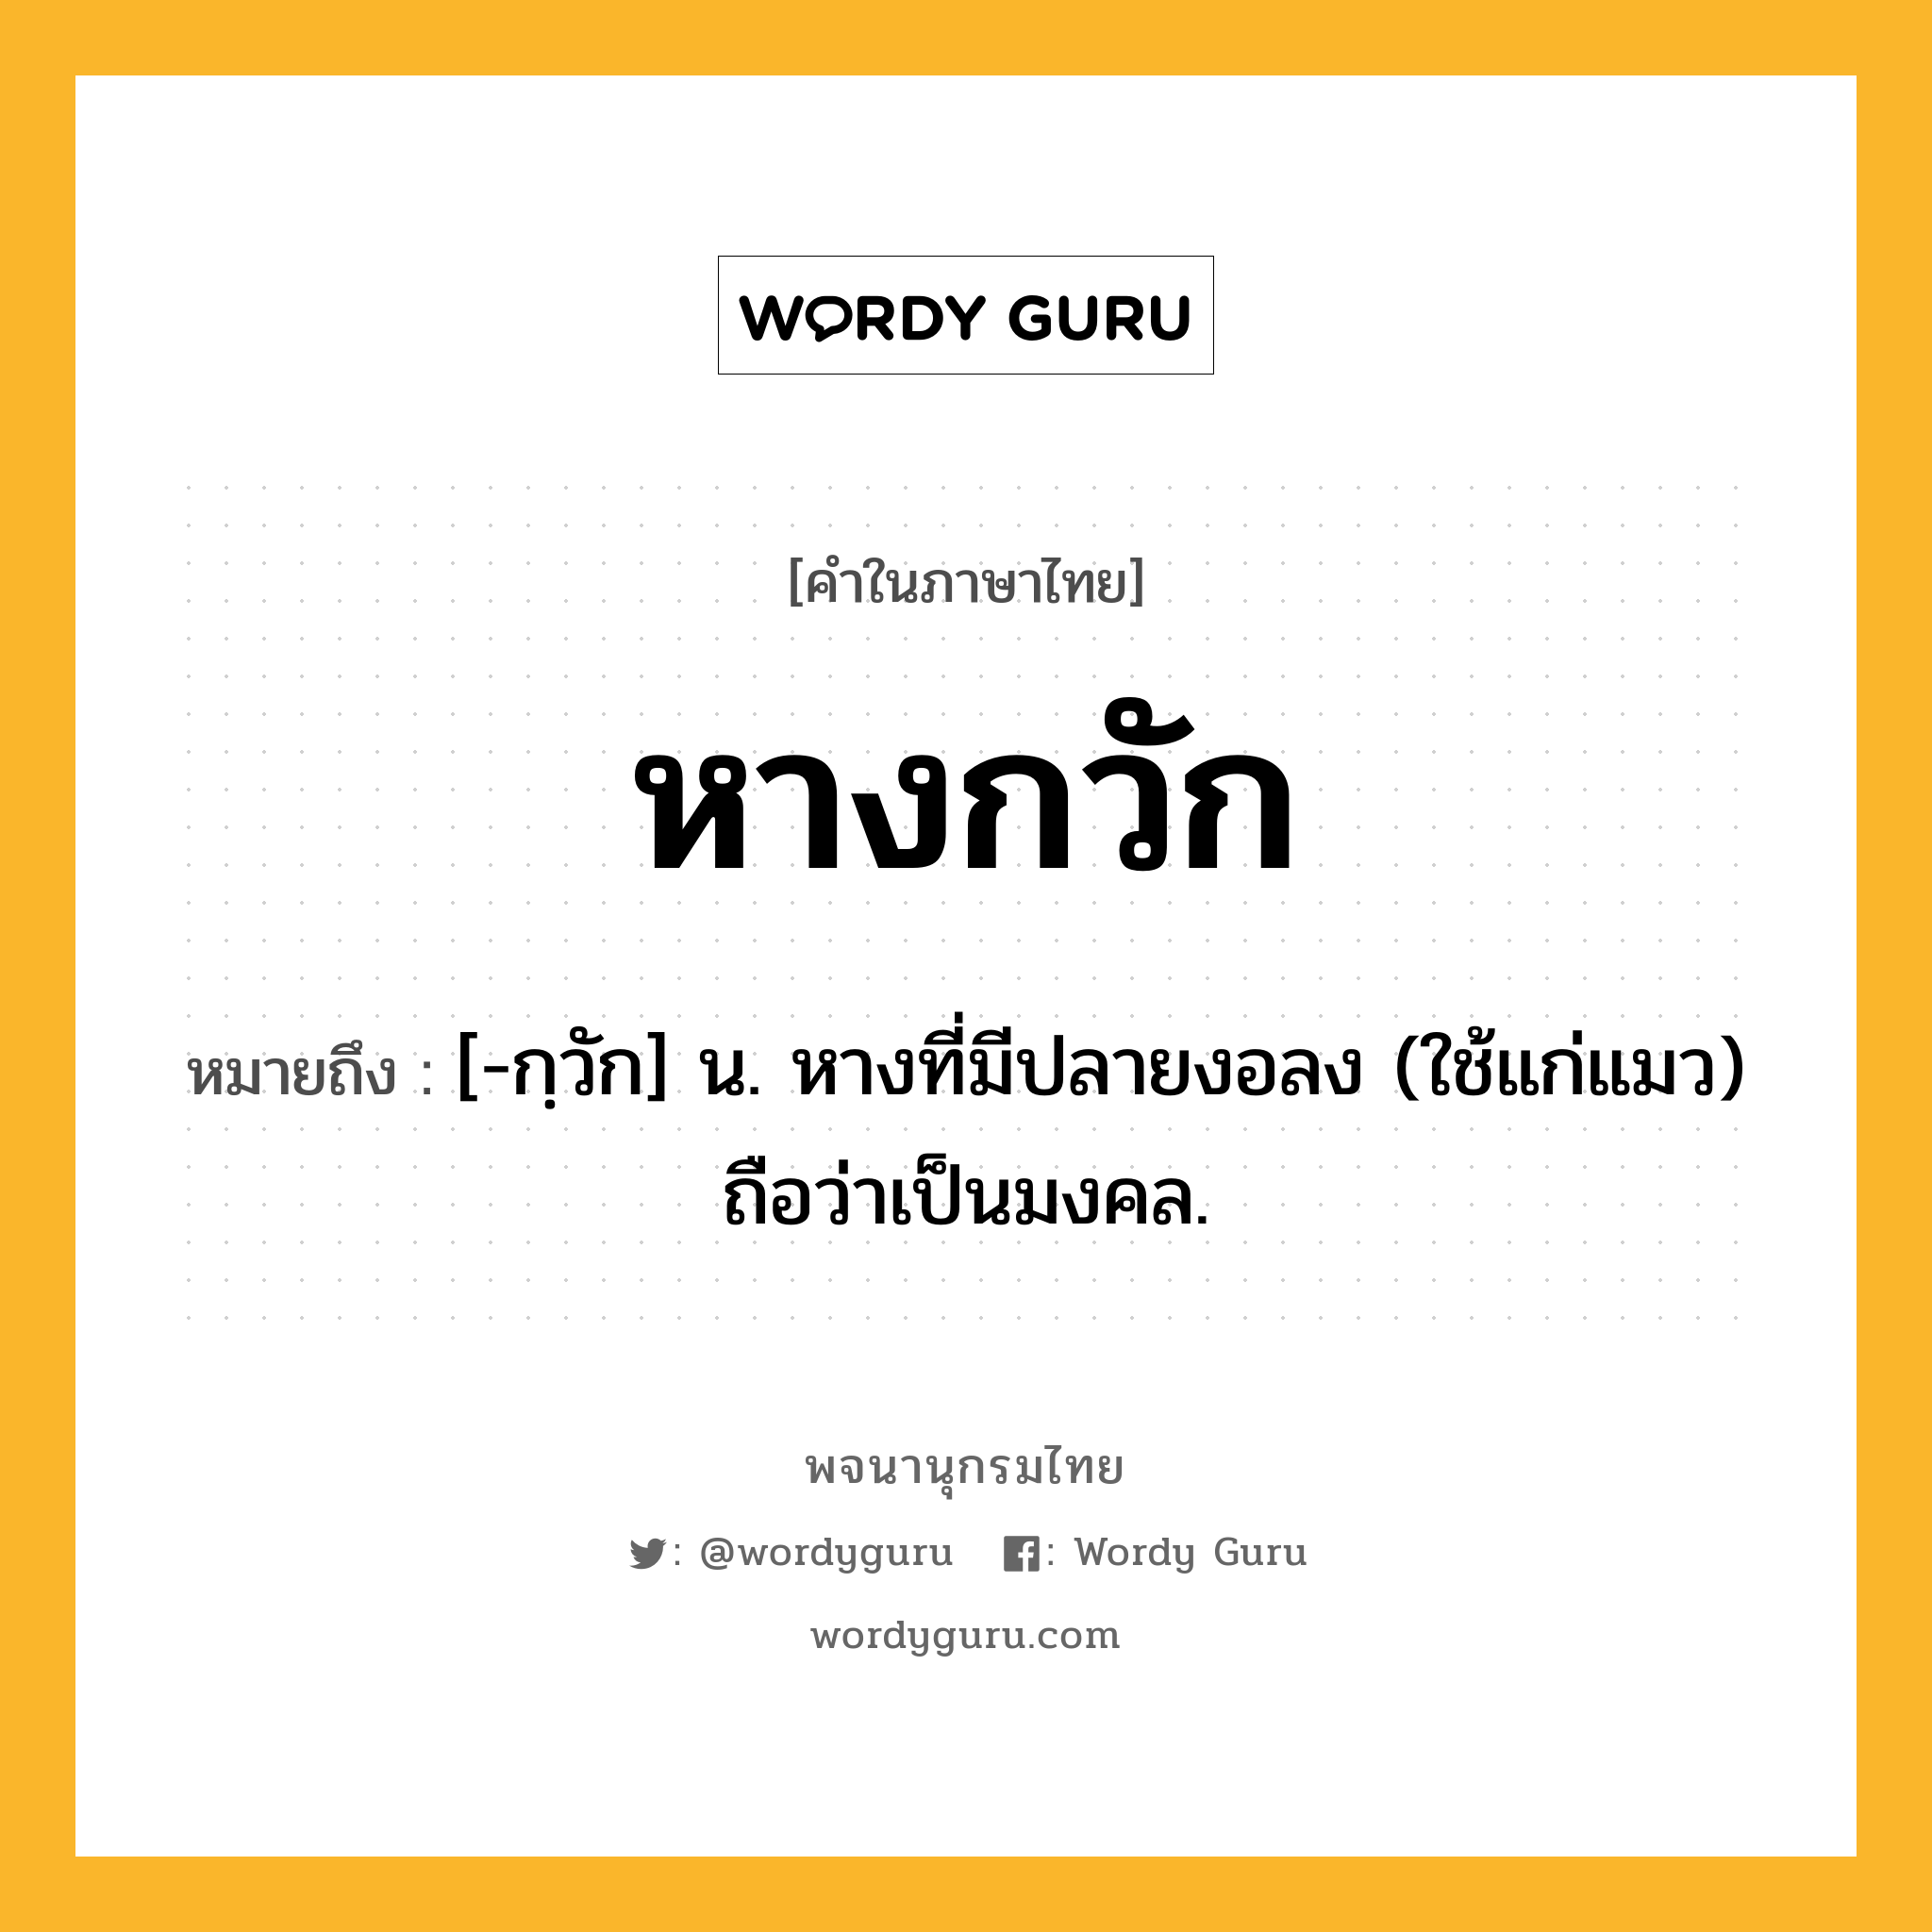 หางกวัก ความหมาย หมายถึงอะไร?, คำในภาษาไทย หางกวัก หมายถึง [-กฺวัก] น. หางที่มีปลายงอลง (ใช้แก่แมว) ถือว่าเป็นมงคล.